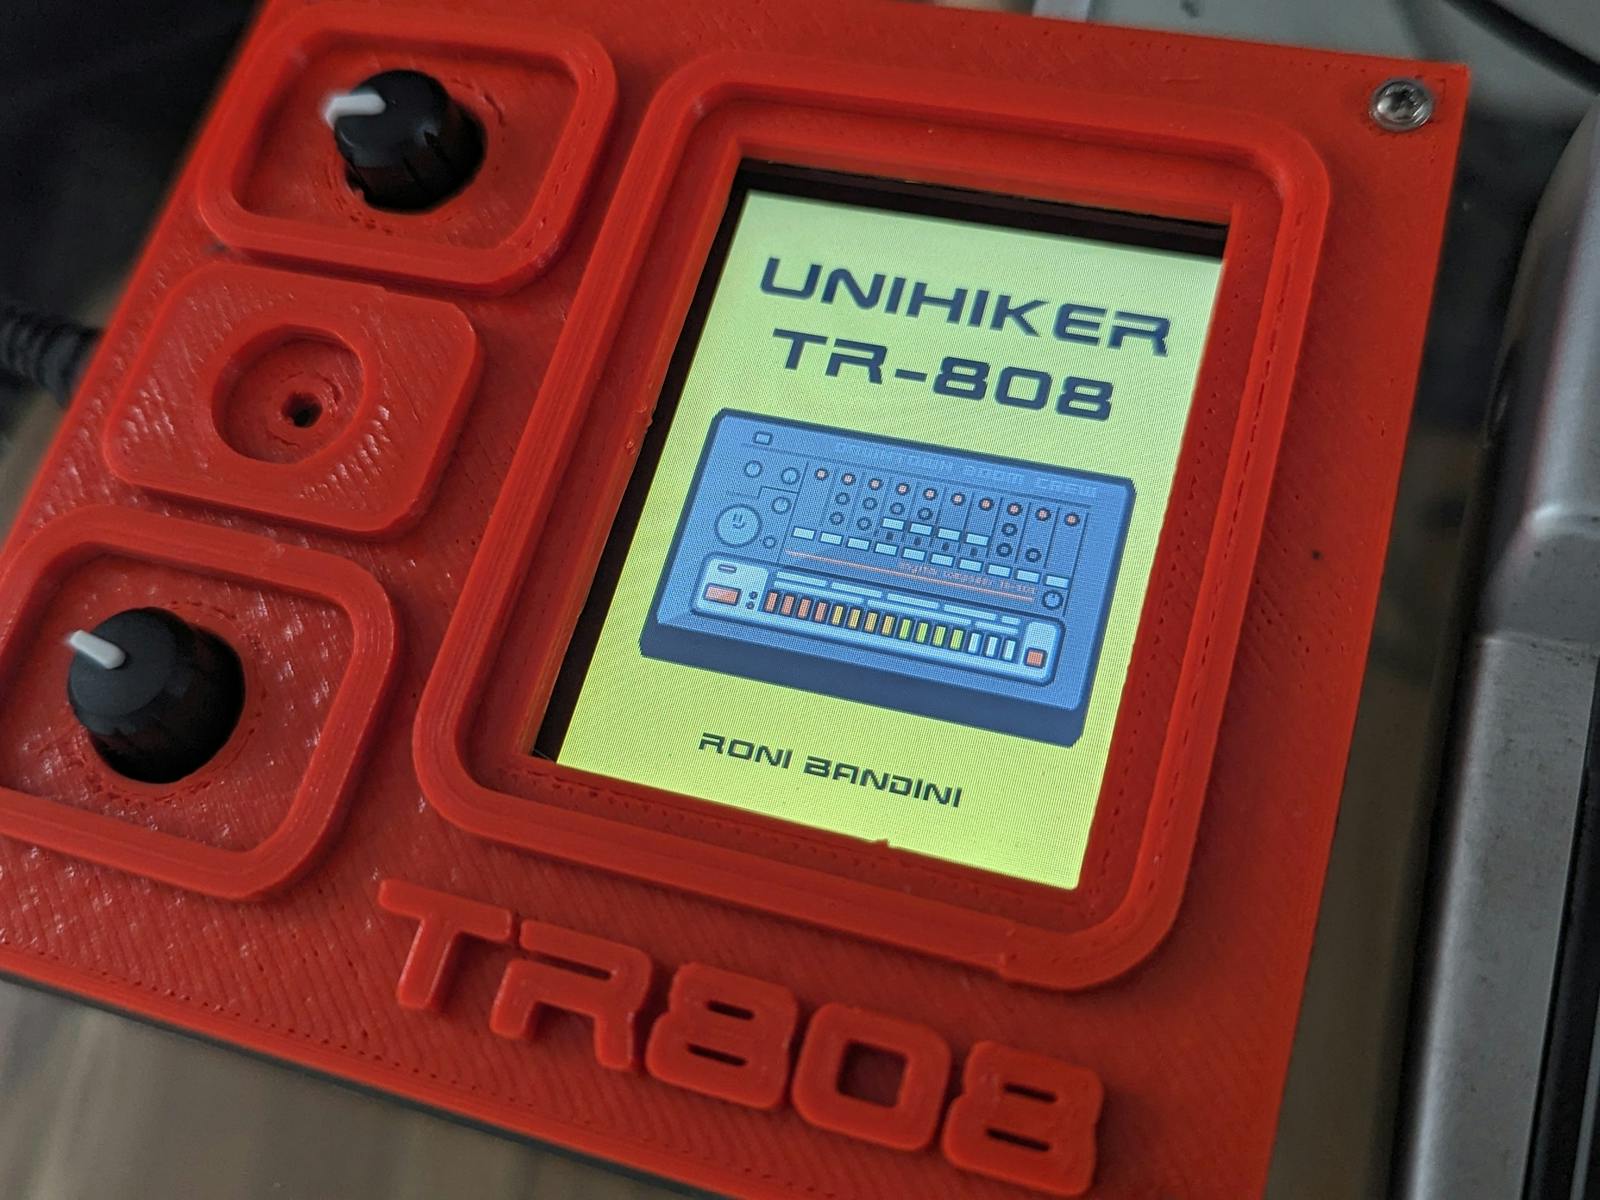 Unihiker TR-808 drum machine - Hackster.io